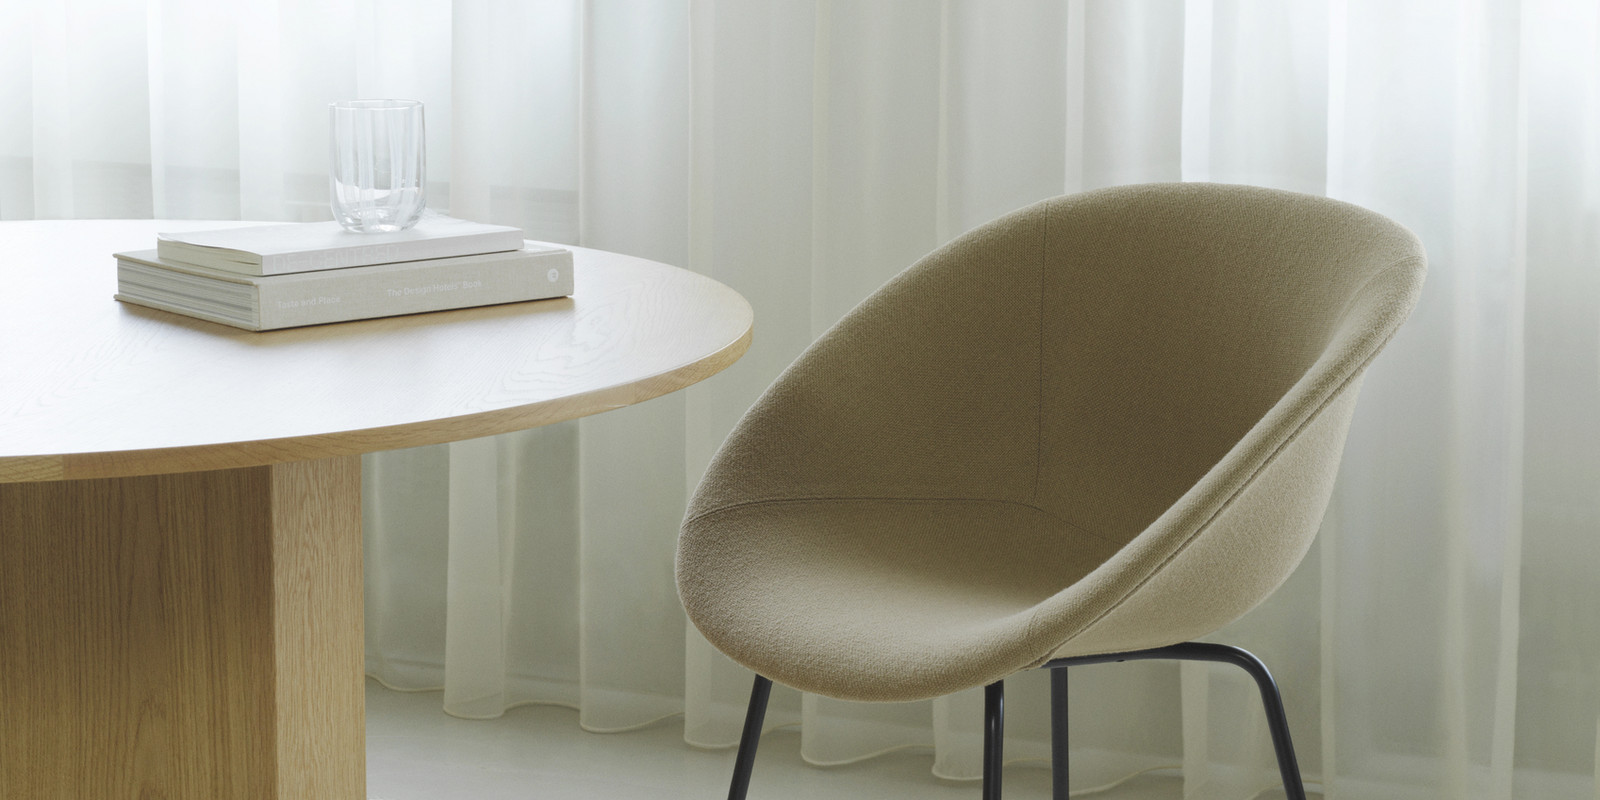 Neue Stuhlserie "Mat" von Normann Copenhagen: Eine Innovation in Design und Nachhaltigkeit Bild 1